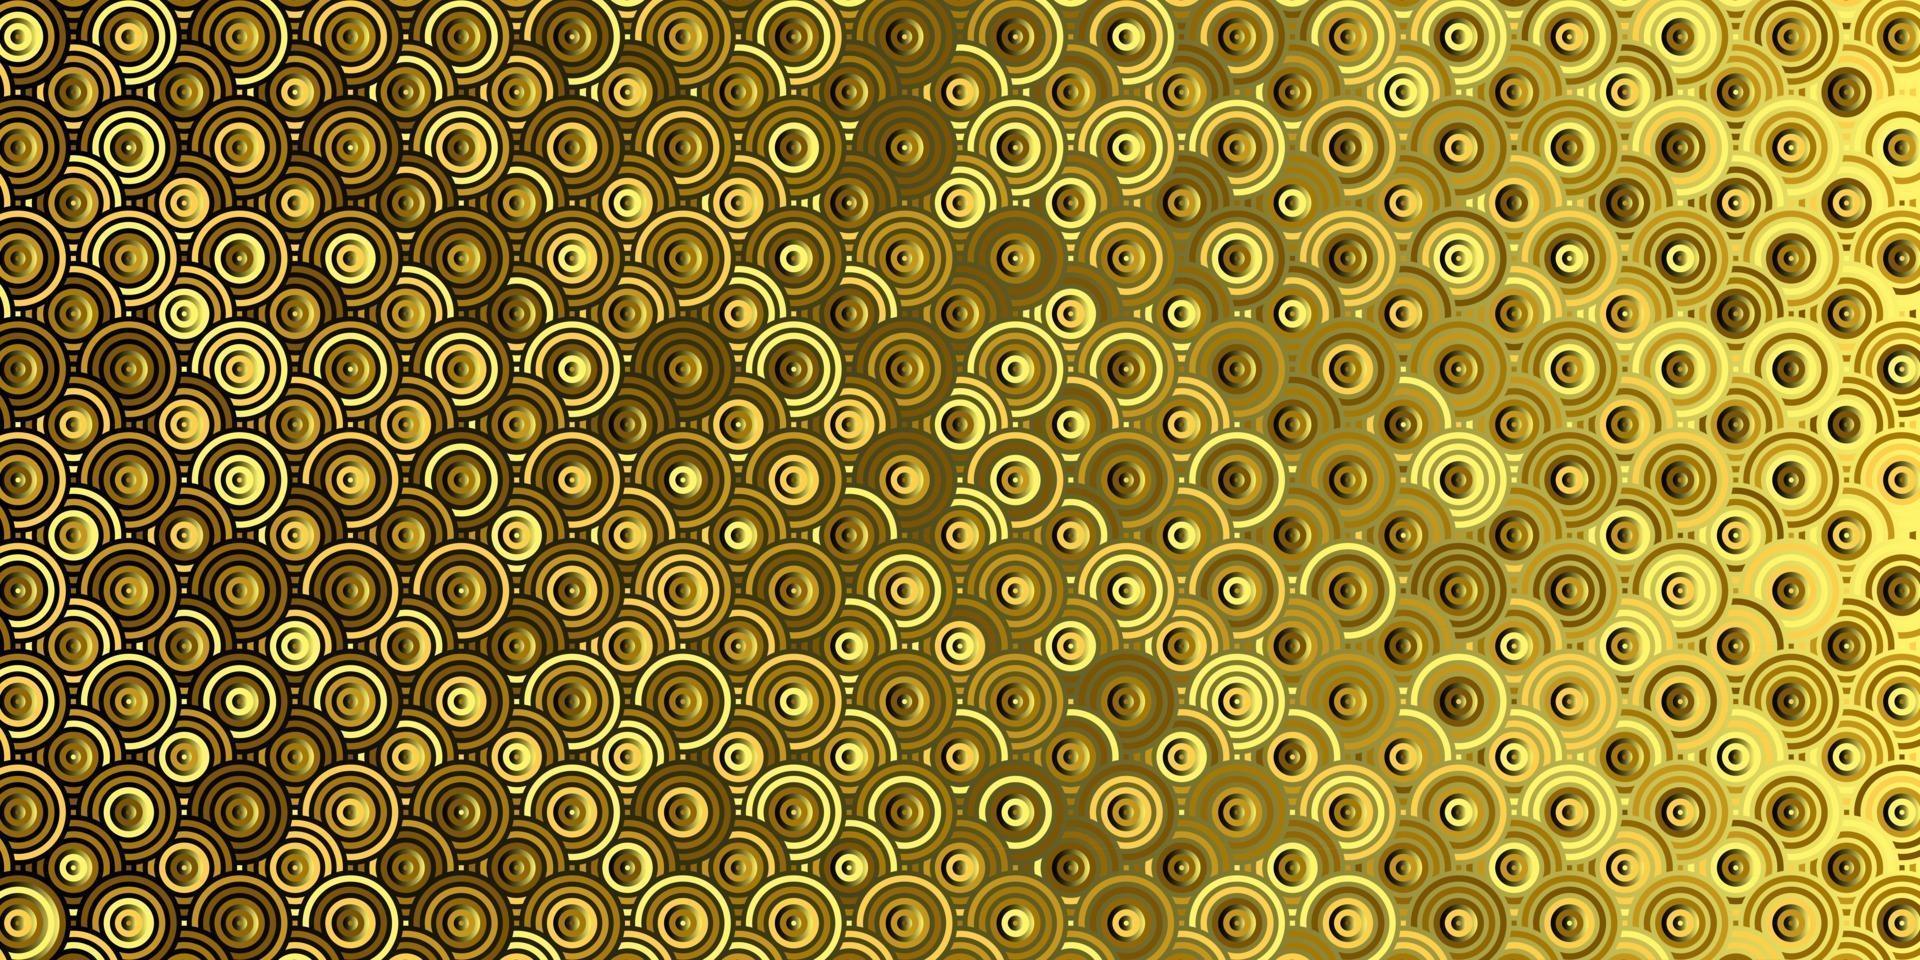 círculos de patrón geométrico abstracto superpuesto fondo de oro tradicional vector